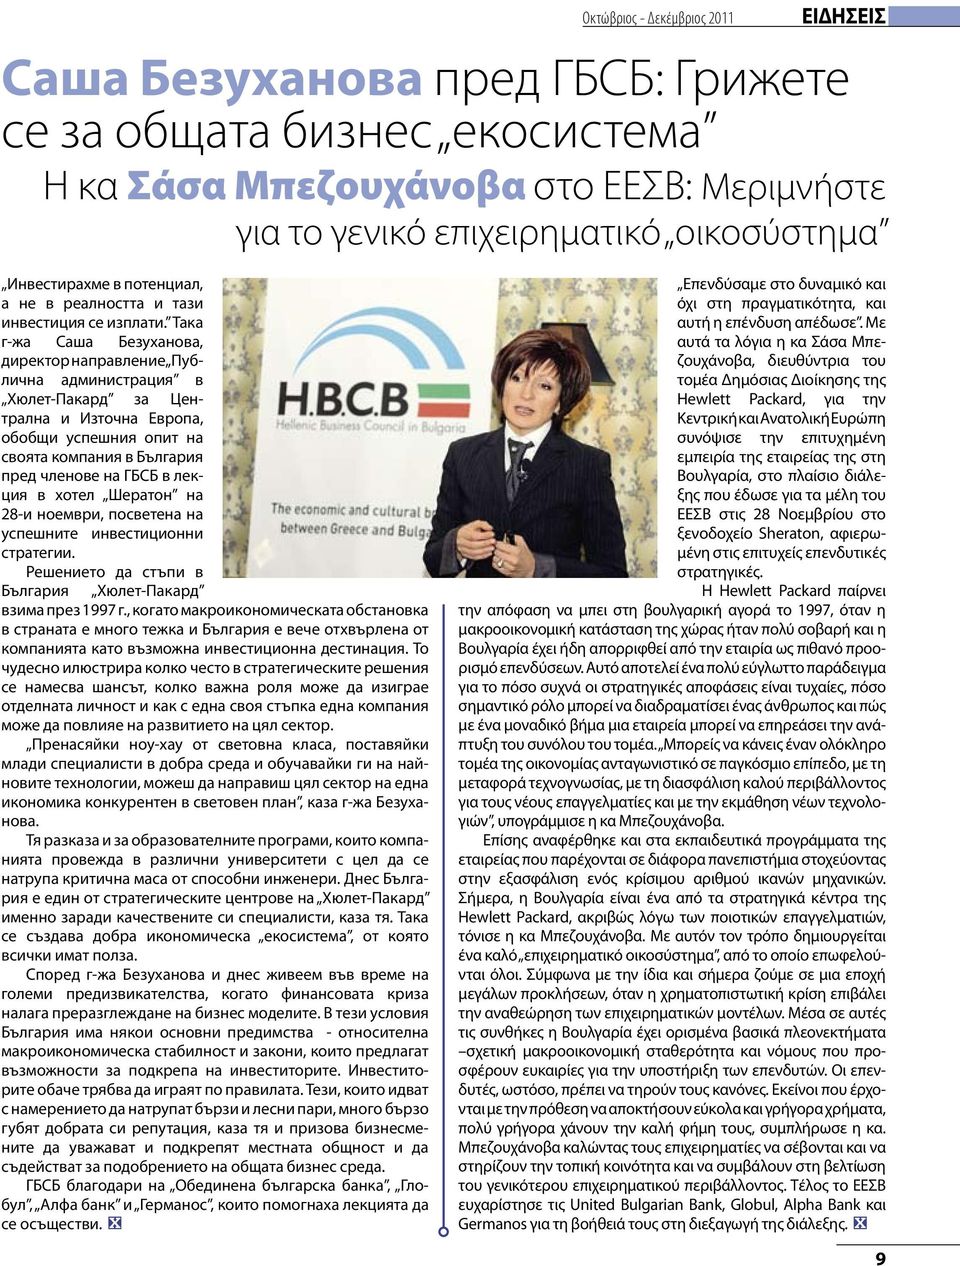 Така г-жа Саша Бе зуханова, директор на правление Пу б- лична ад министрация в Хюлет-Пакард за Централна и Източна Европа, обобщи успешния опит на своята компания в България пред членове на ГБСБ в